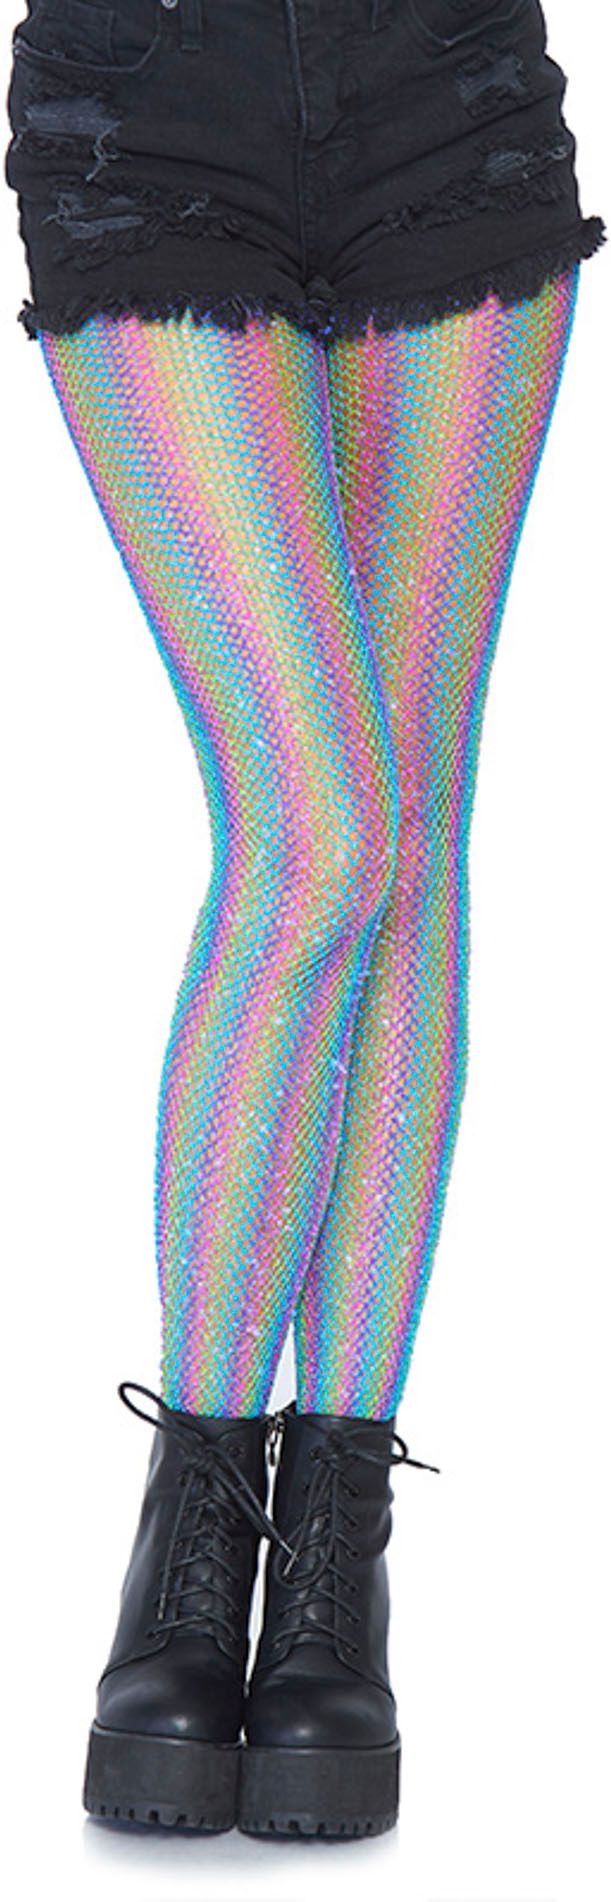 Visnetpanty regenboog met strepen